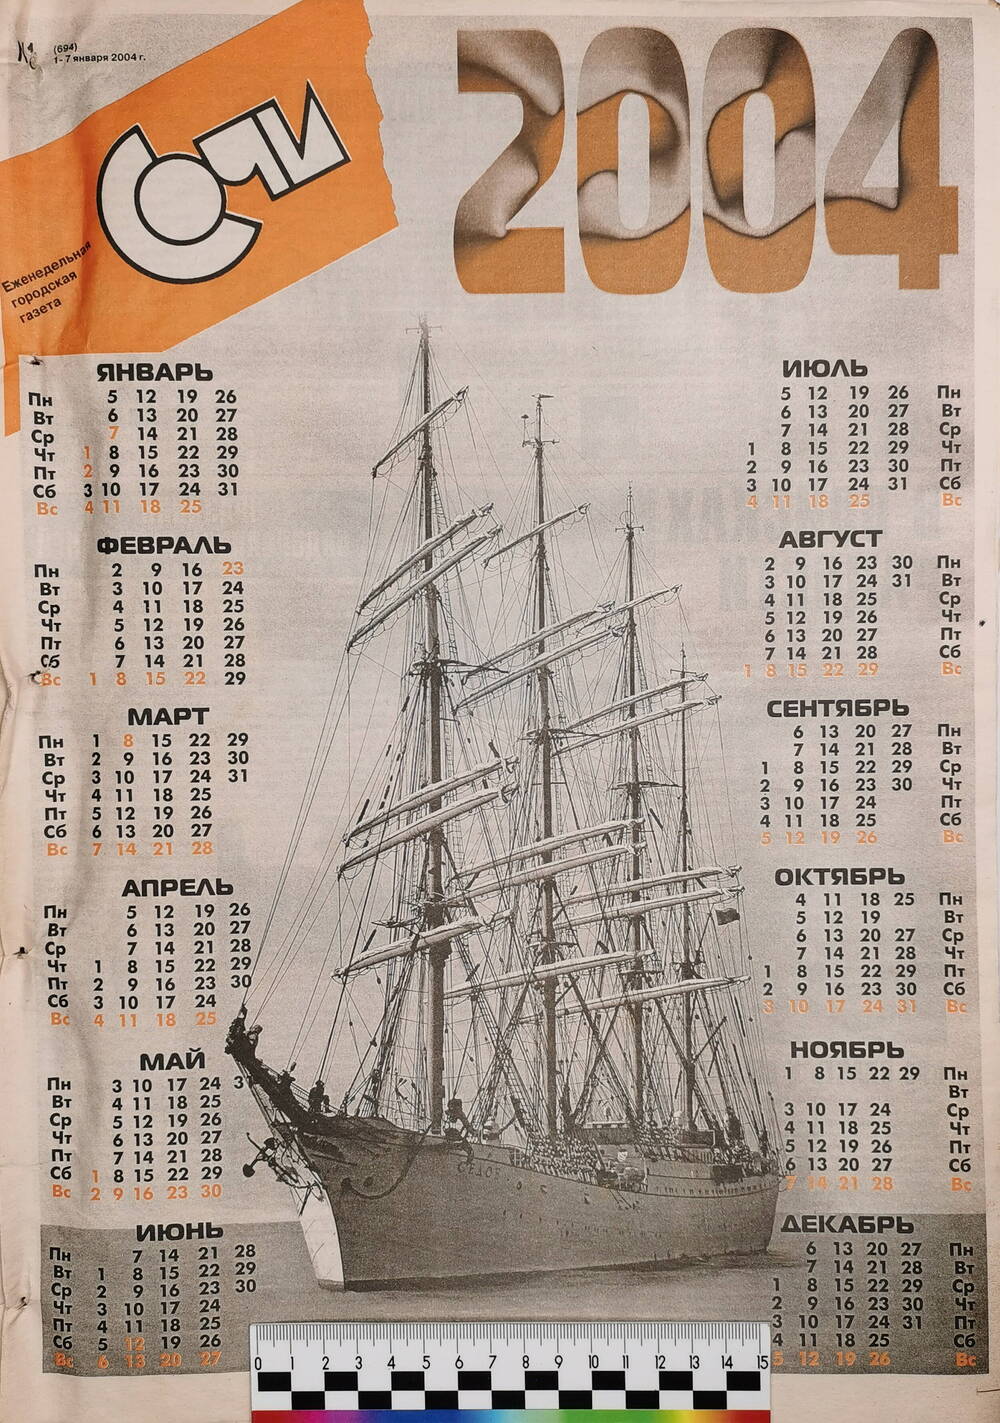 Газета еженедельная городская «Сочи» № 1 (694) с 1 по 7 января 2004 г.